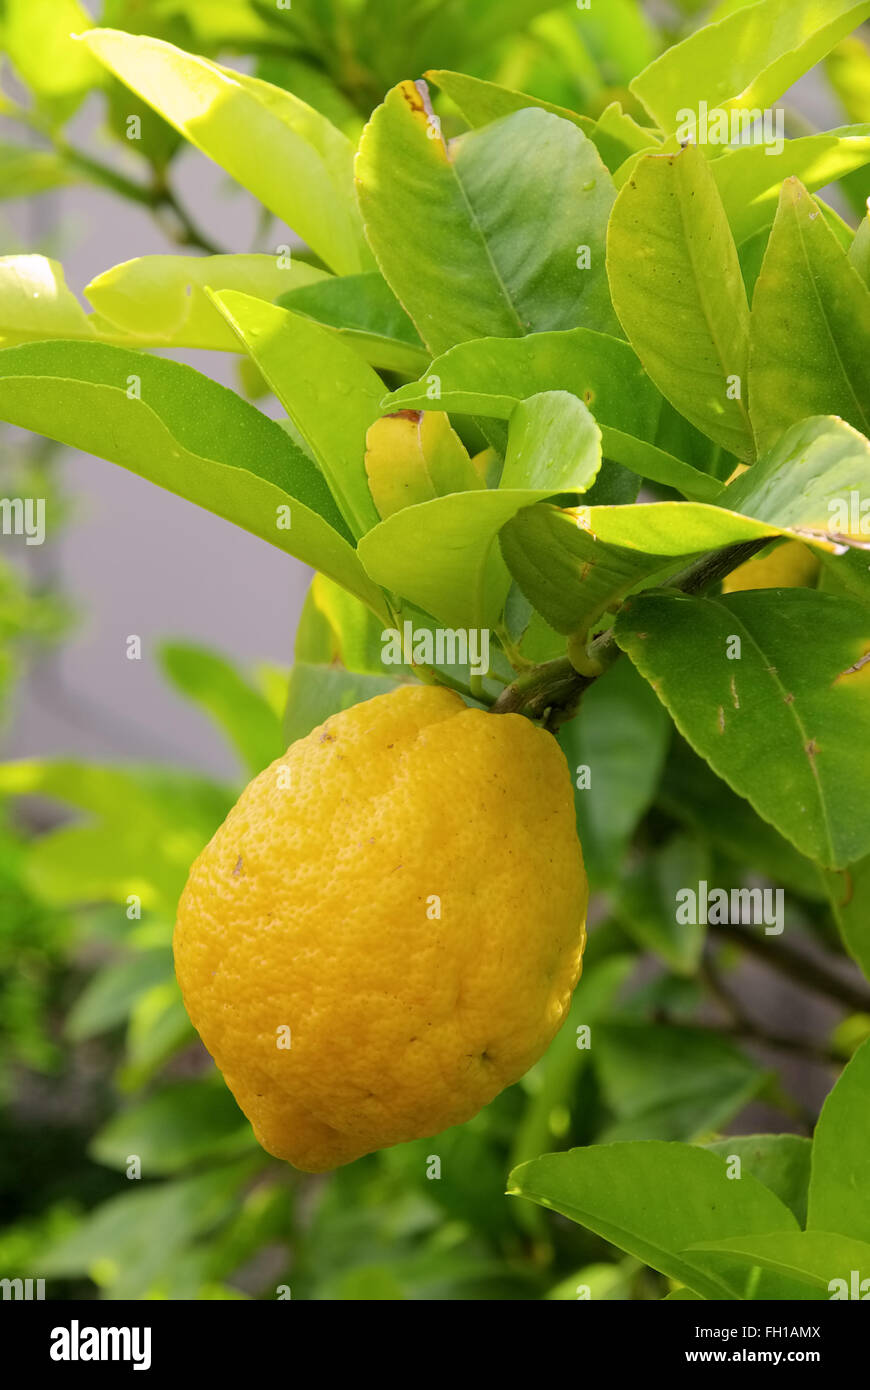 Limone am Baum - limone su albero 08 Foto Stock